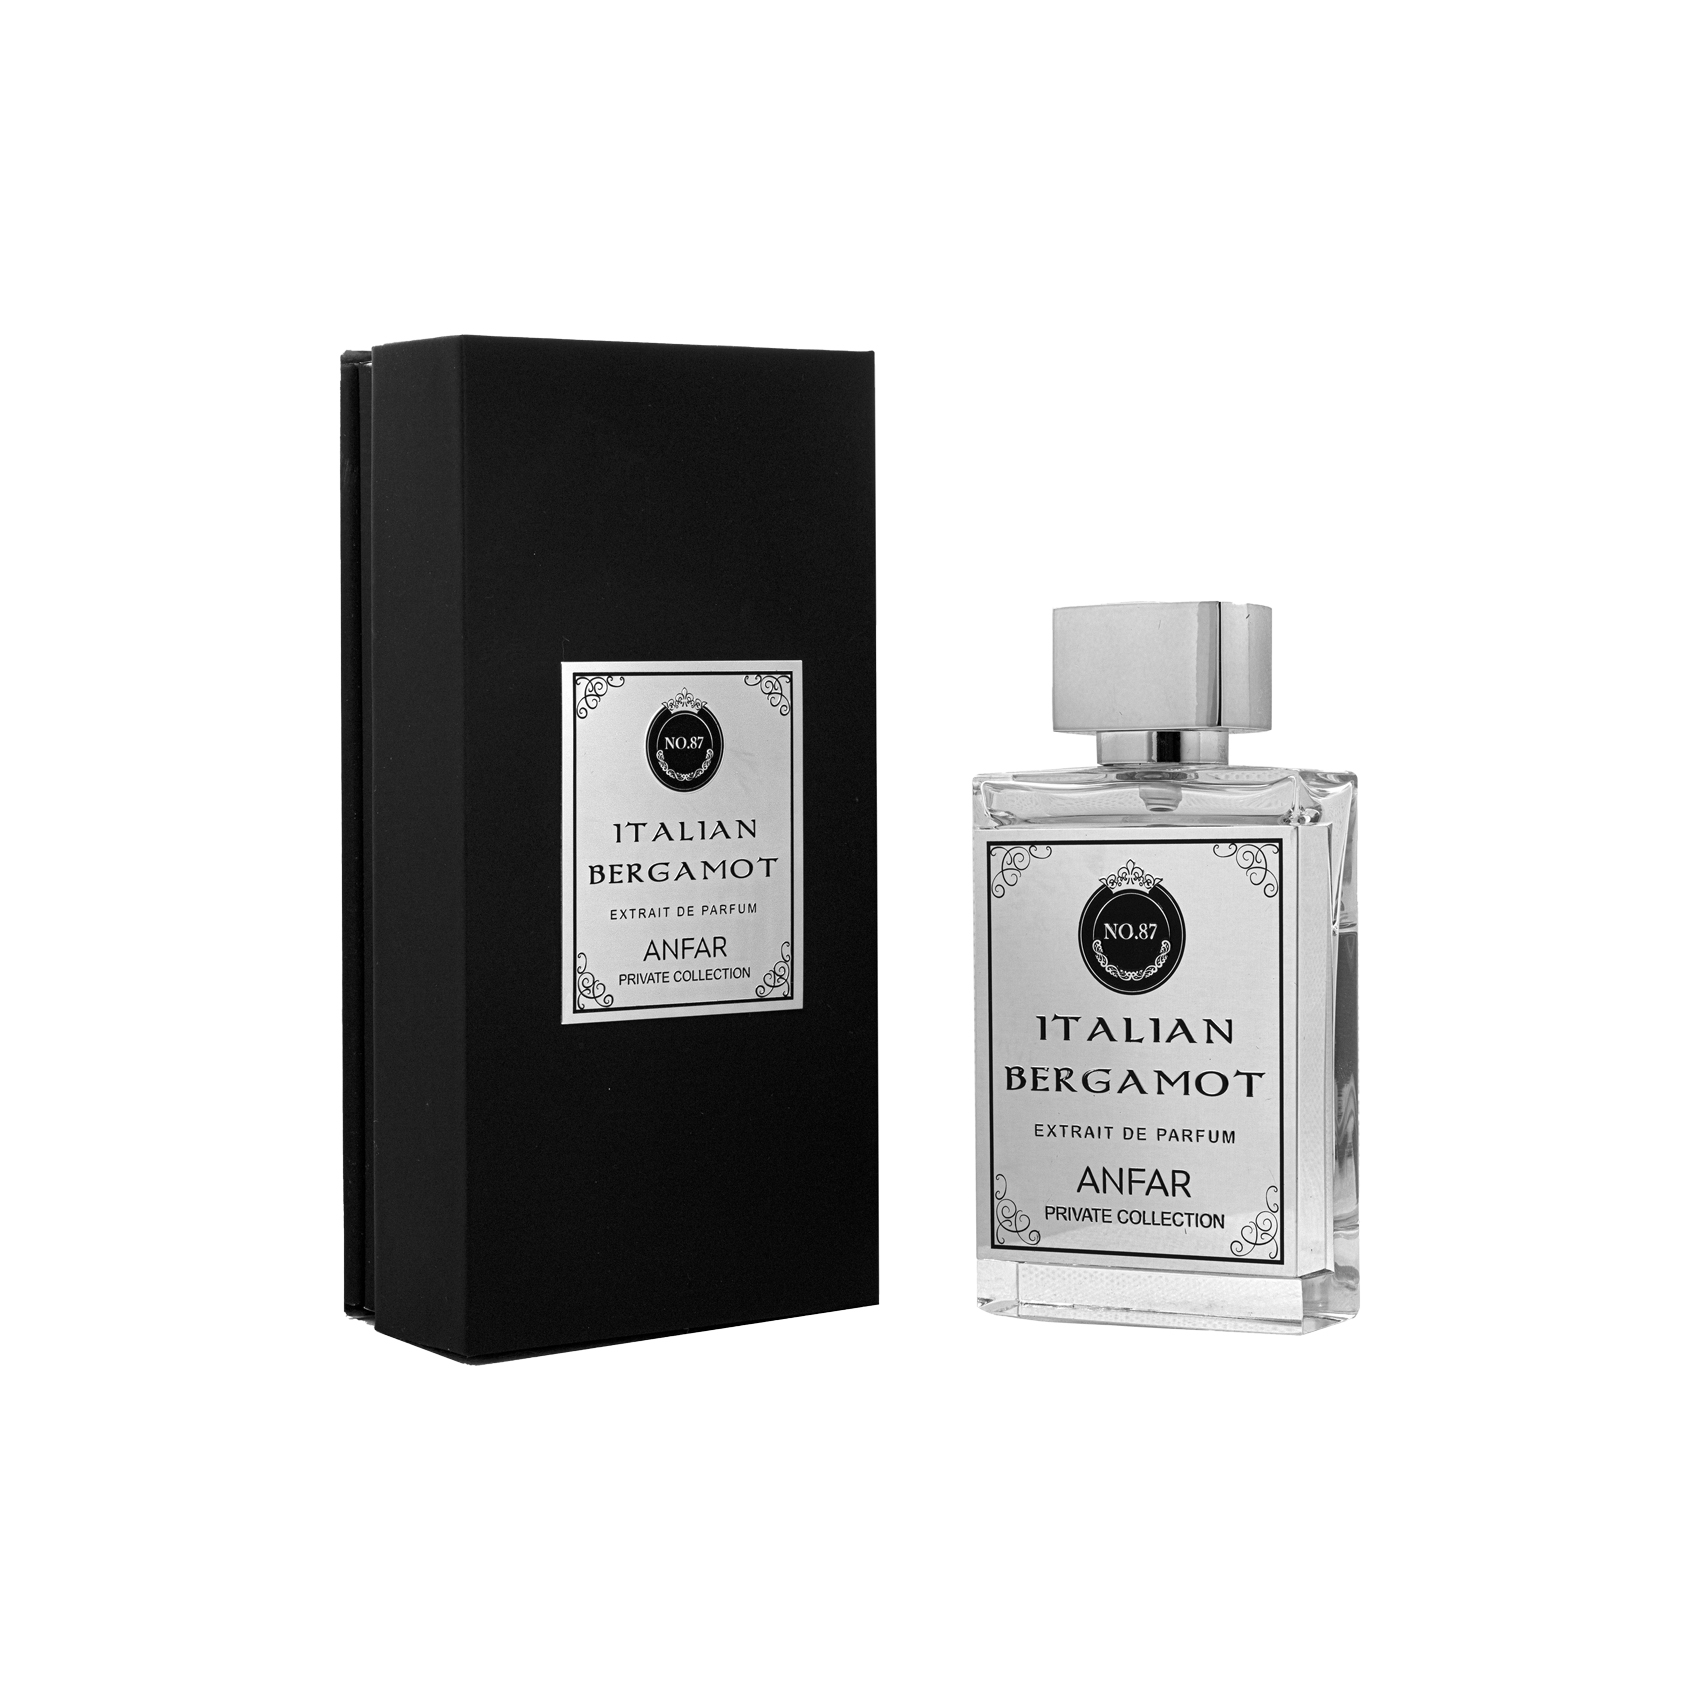 Italian Bergamot Private Collection Edp 50ml Perfume For Men & Women By Anfar 